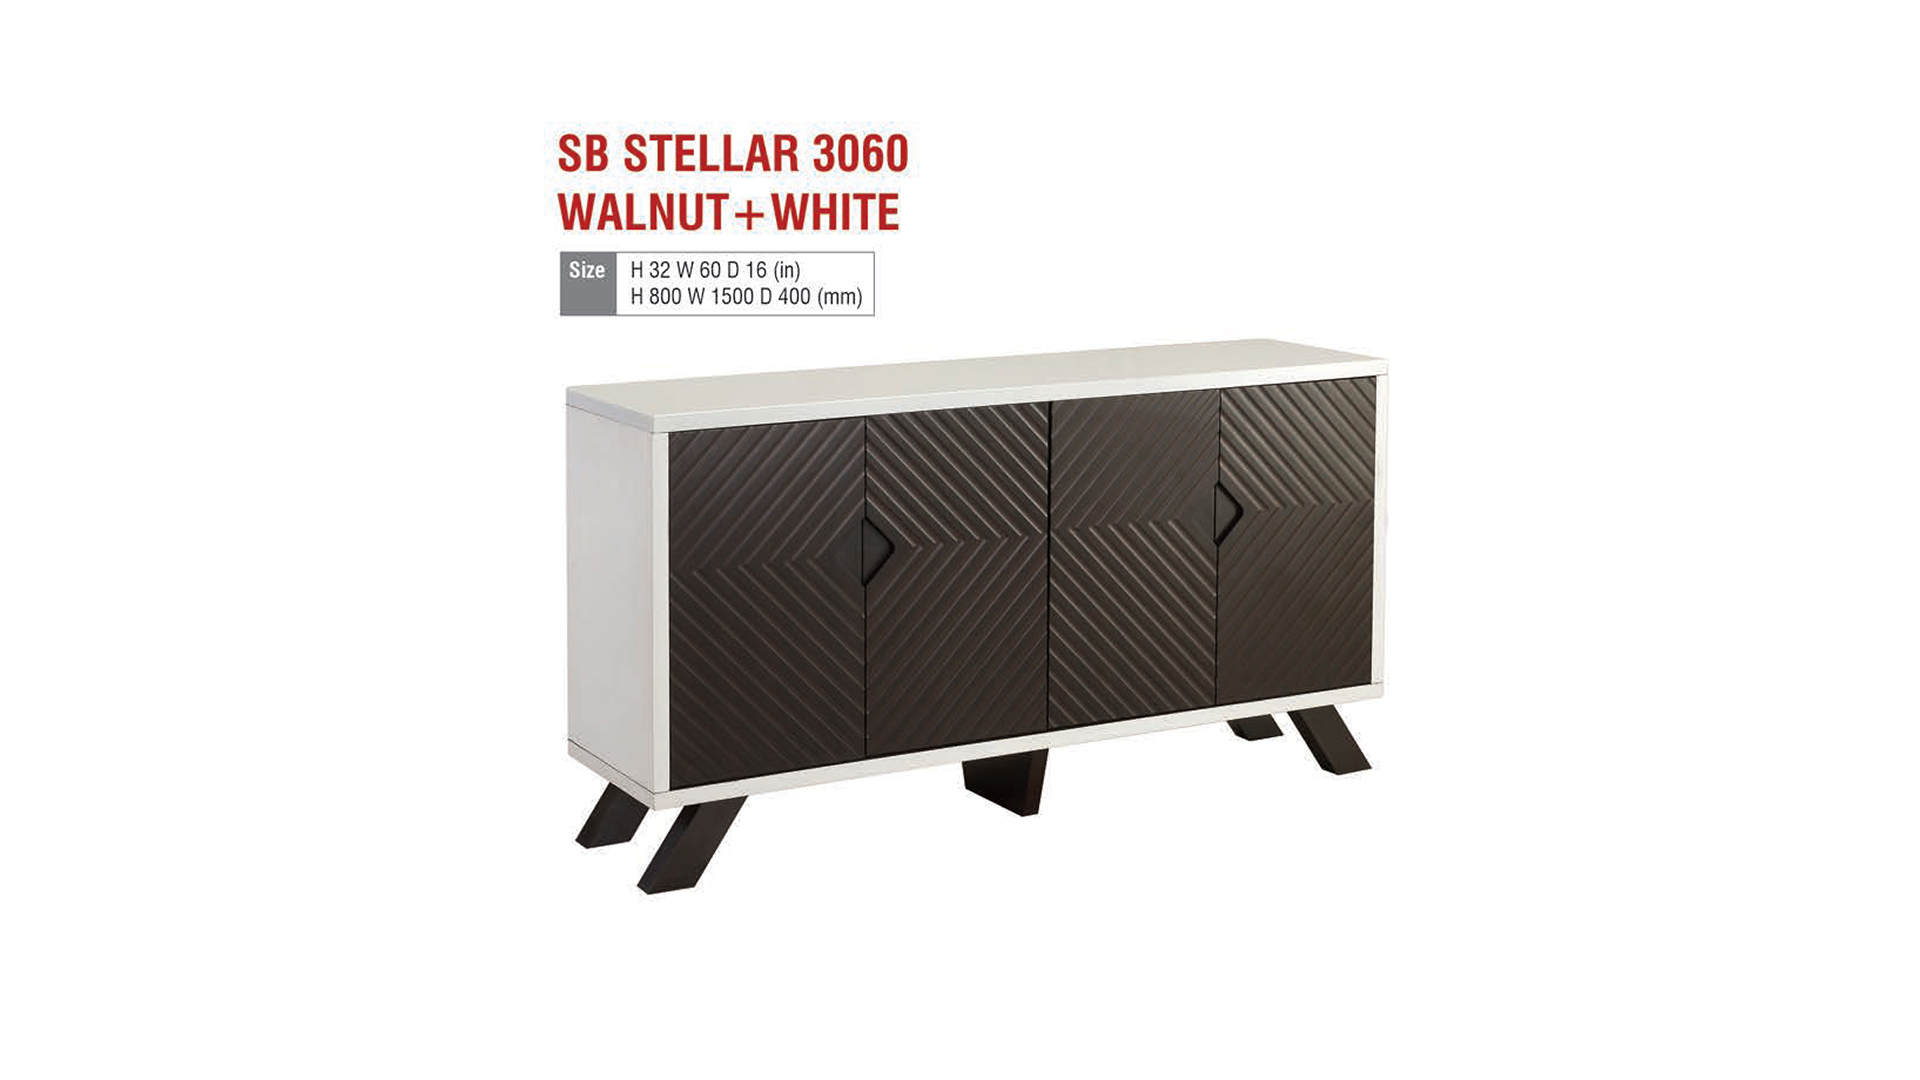 SB STELLAR 3060 WALNUT+WHITE